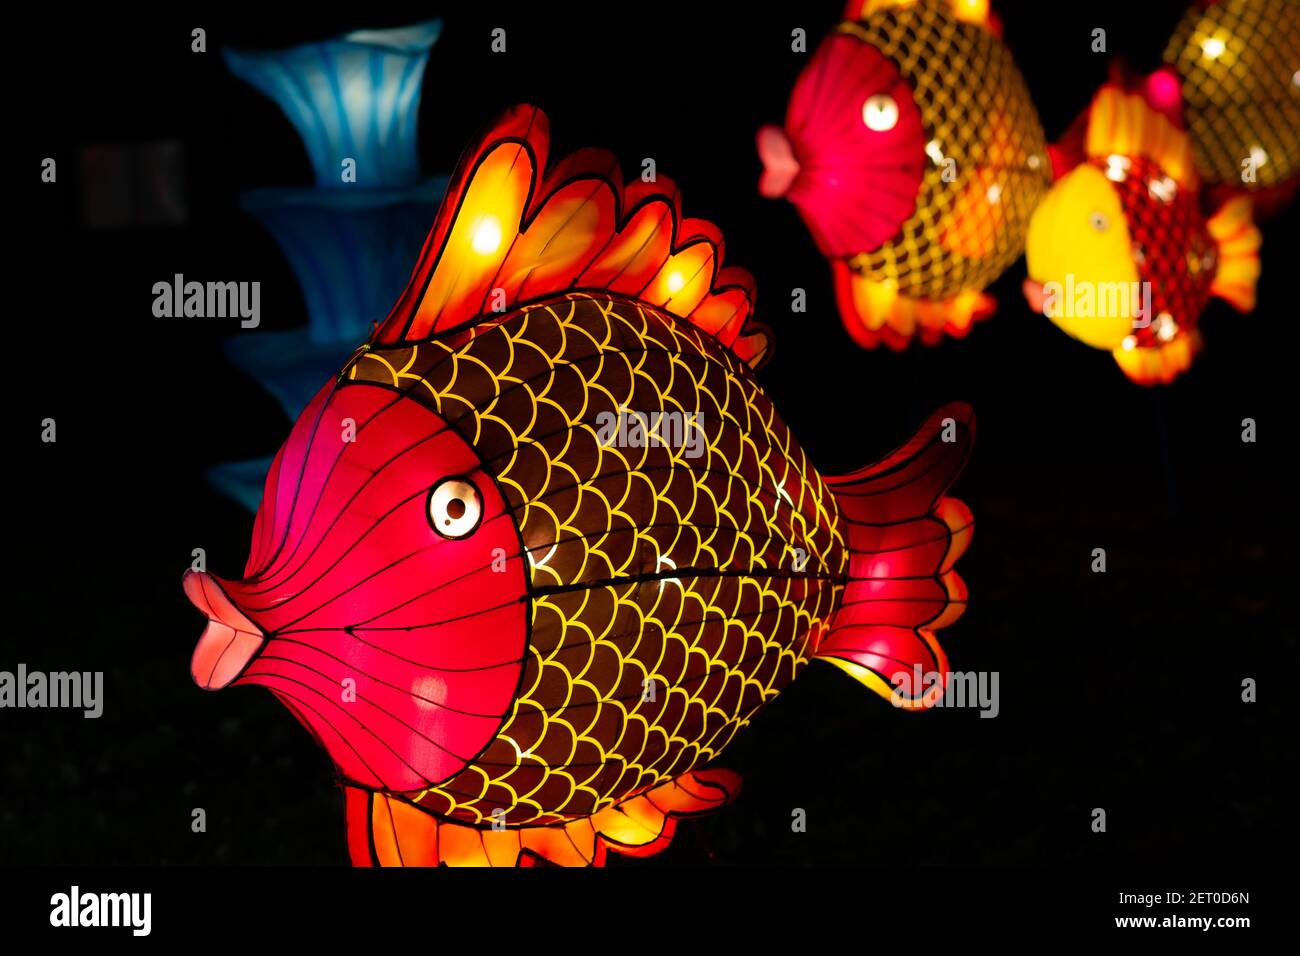 Le Festival des lanternes chinoises au parc de Limanski à Novi Sad. Une lanterne de charme de poisson. Un accent sélectif est mis sur le poisson de front. Banque D'Images